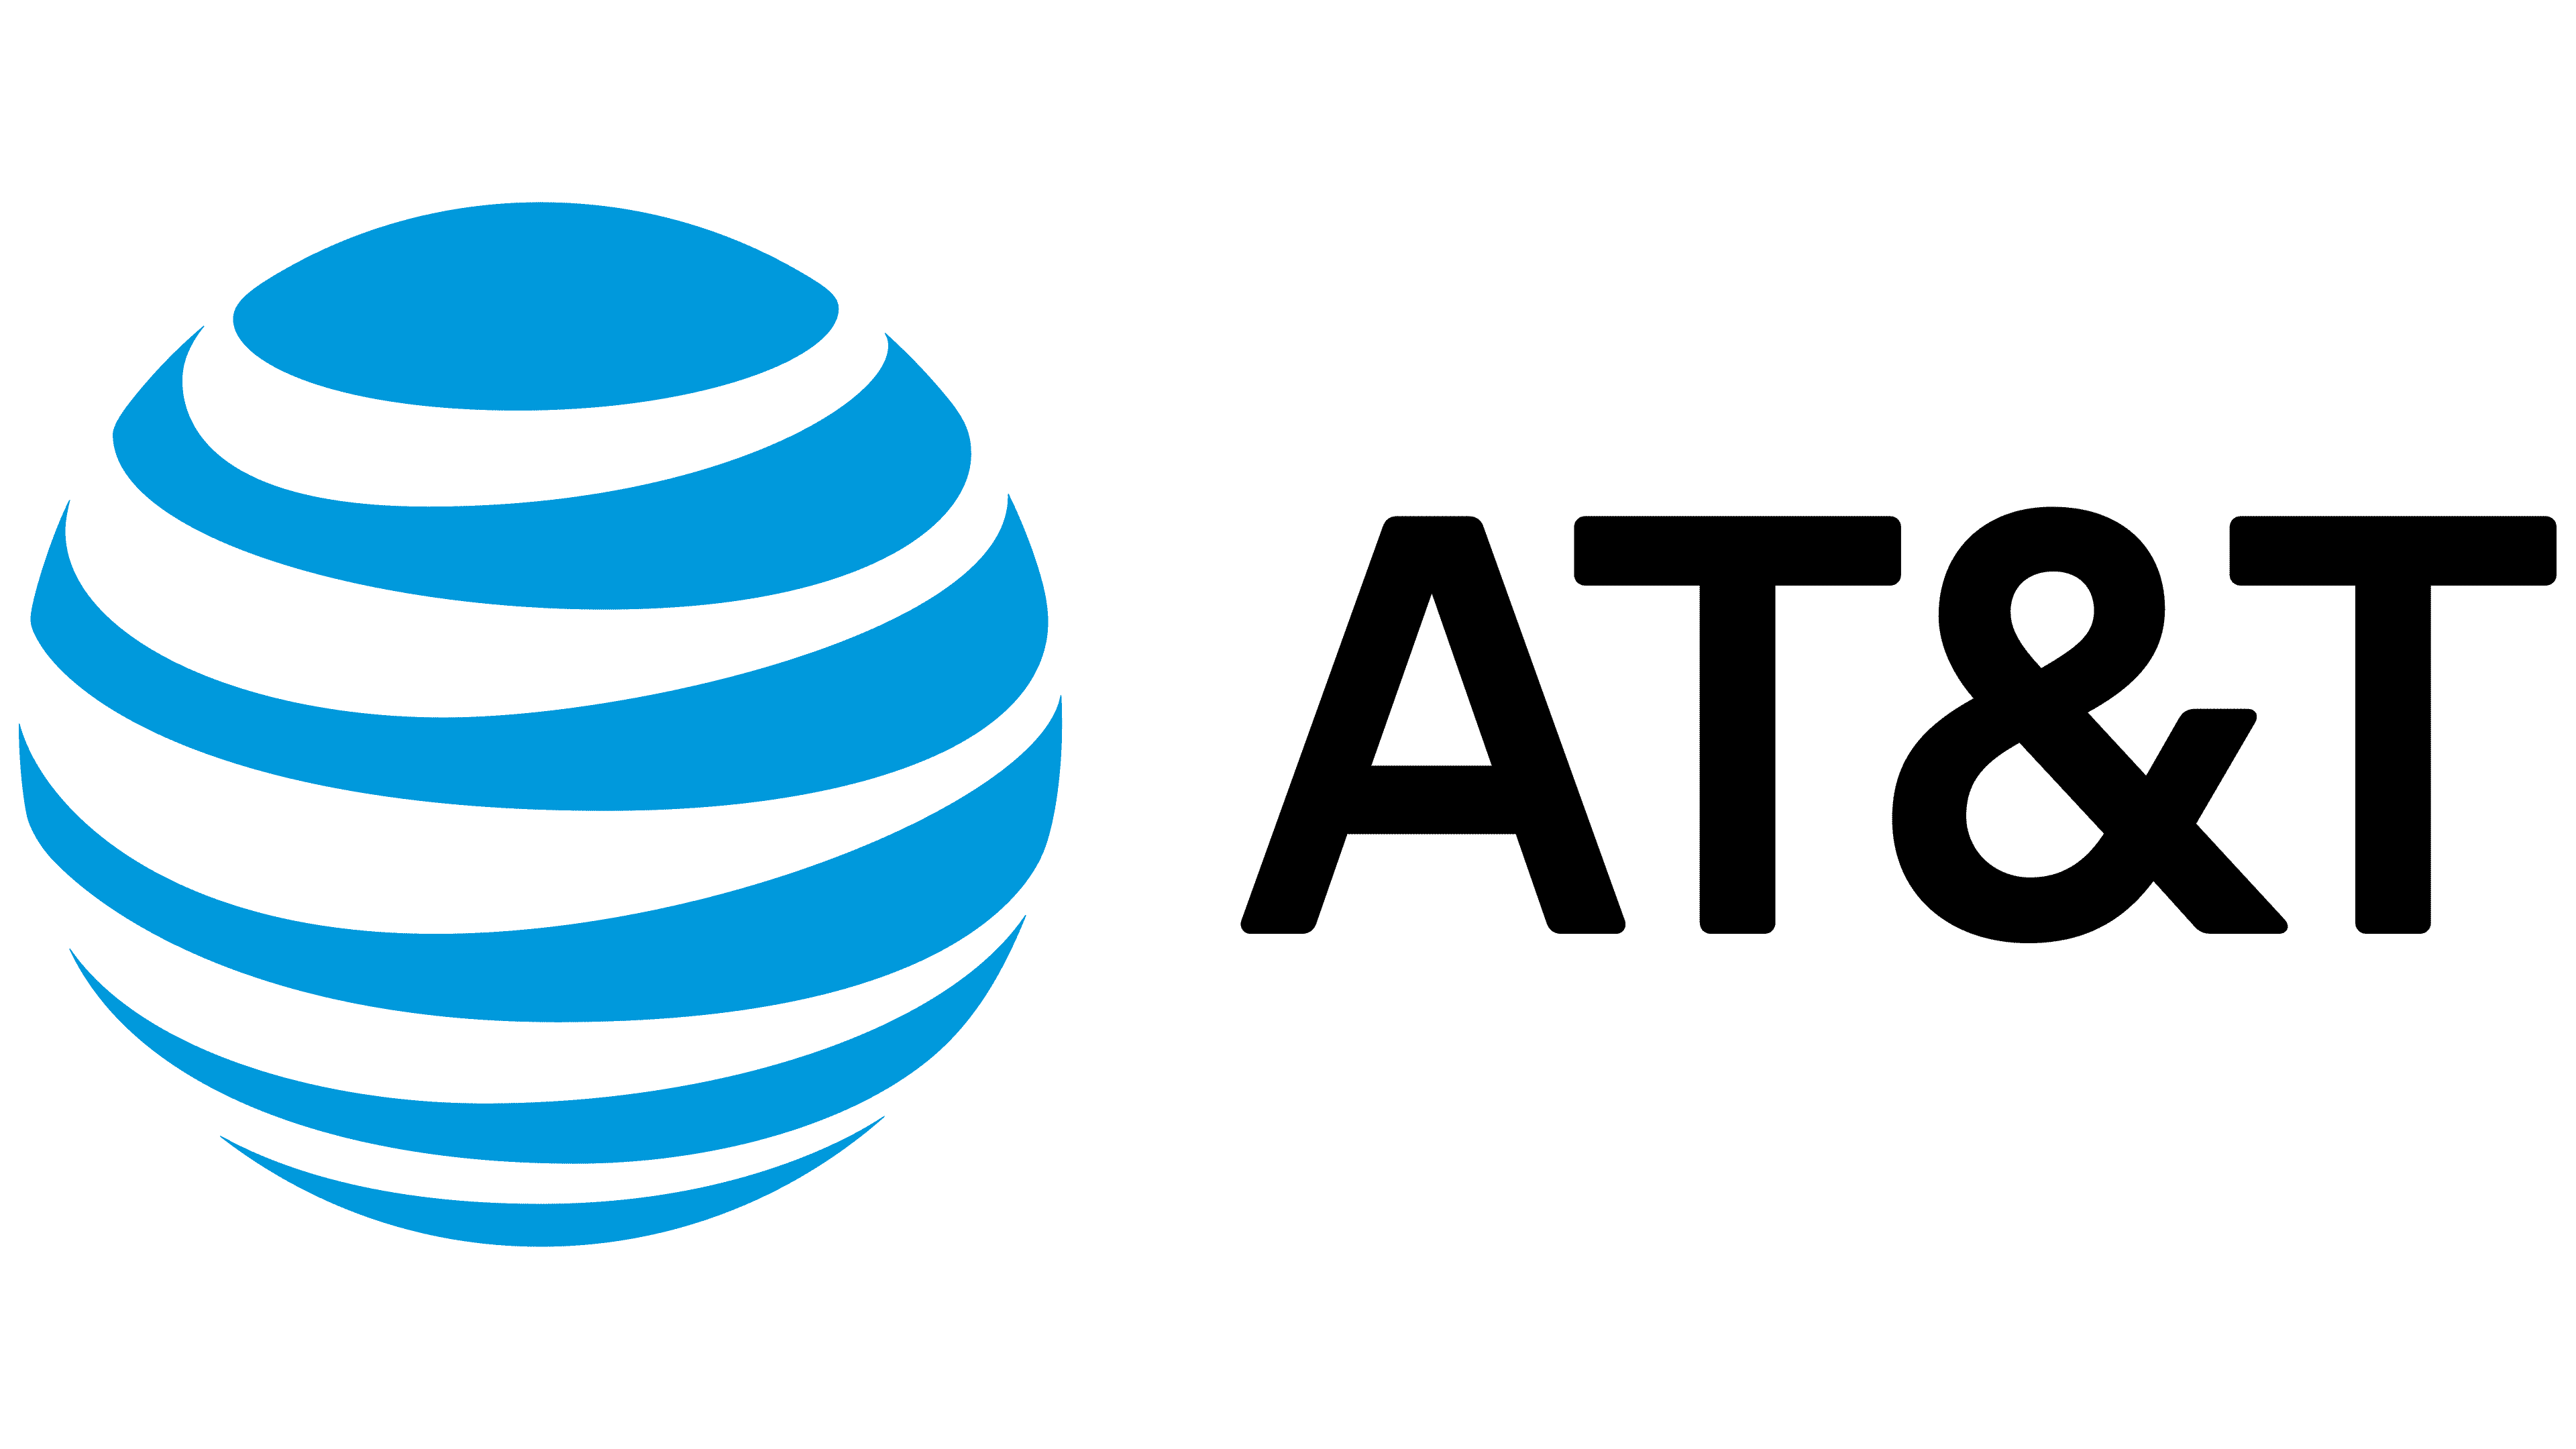 Blue orb AT&T logo